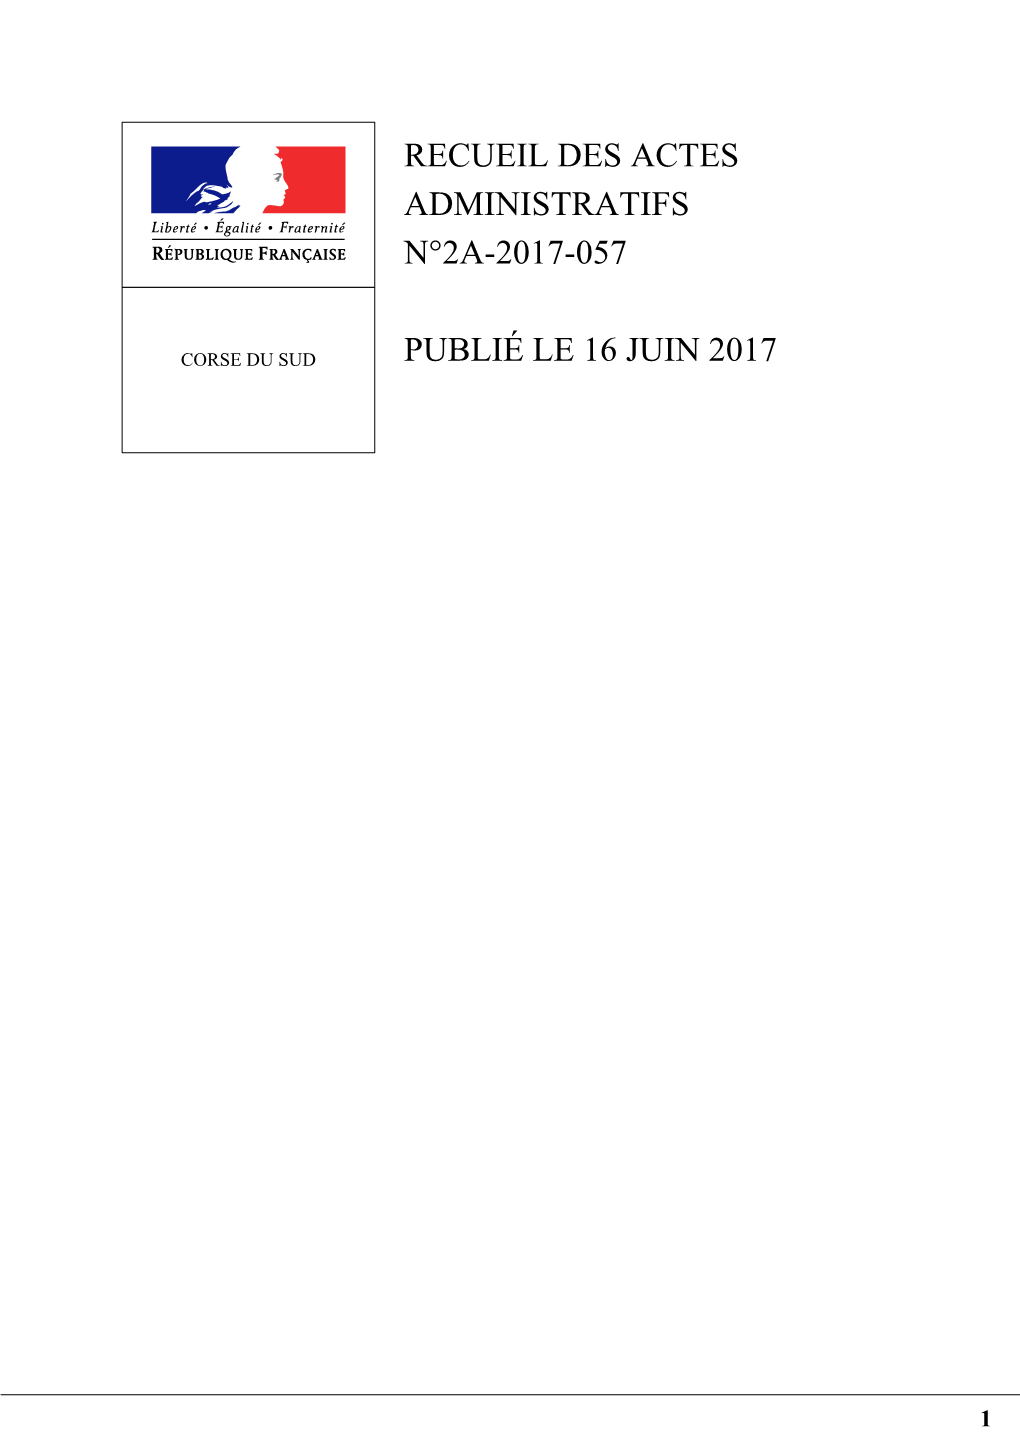 Recueil 2A 2017 057 Recueil Des Actes Administratifs